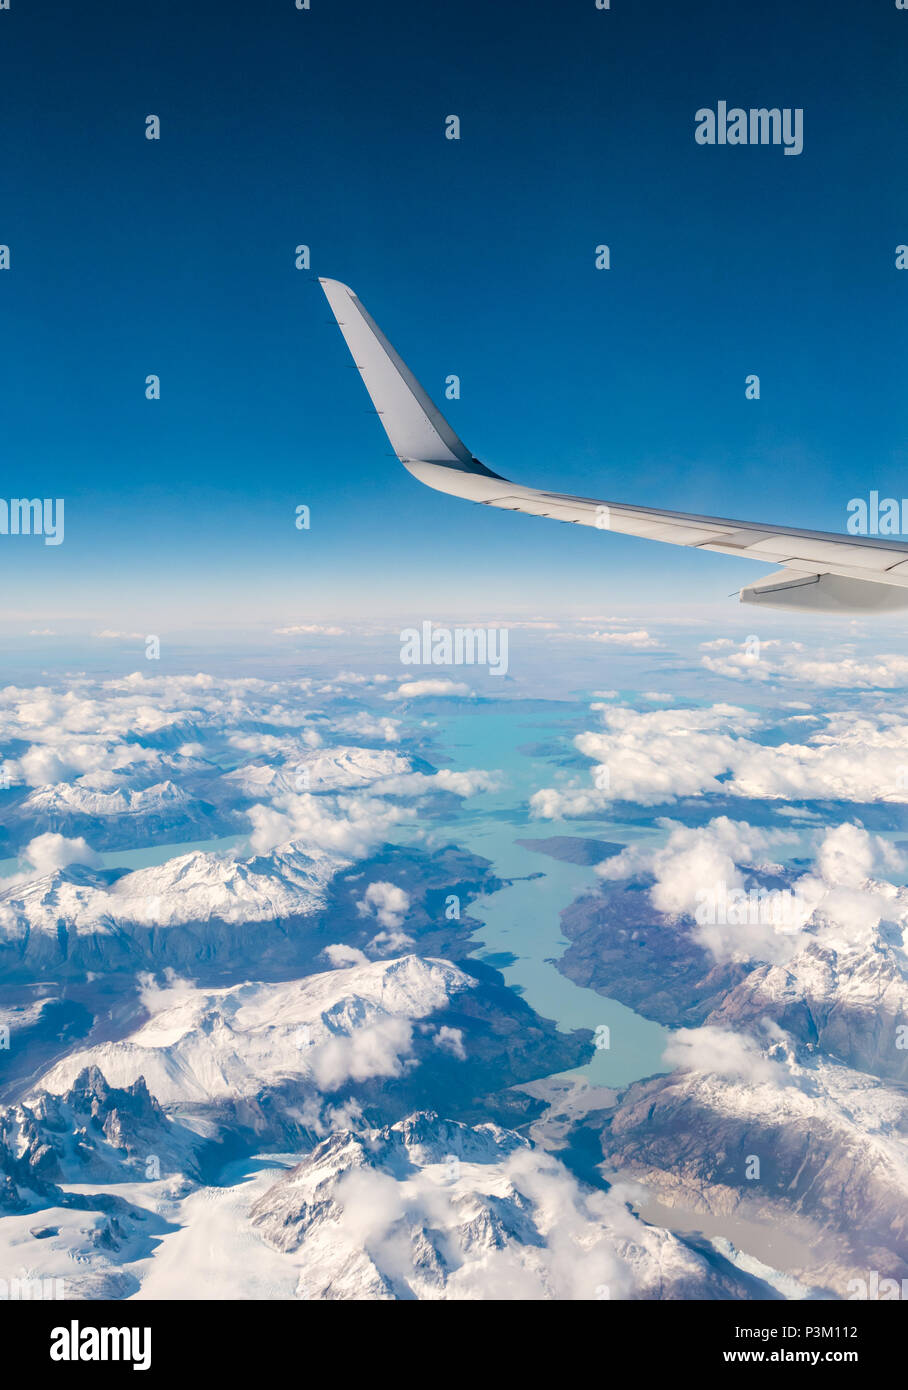 Vue depuis la fenêtre de l'avion de la neige a couvert des Andes avec les lacs, les glaciers et icebergs, le sud du champ de glace de Patagonie Patagonie, au Chili Banque D'Images